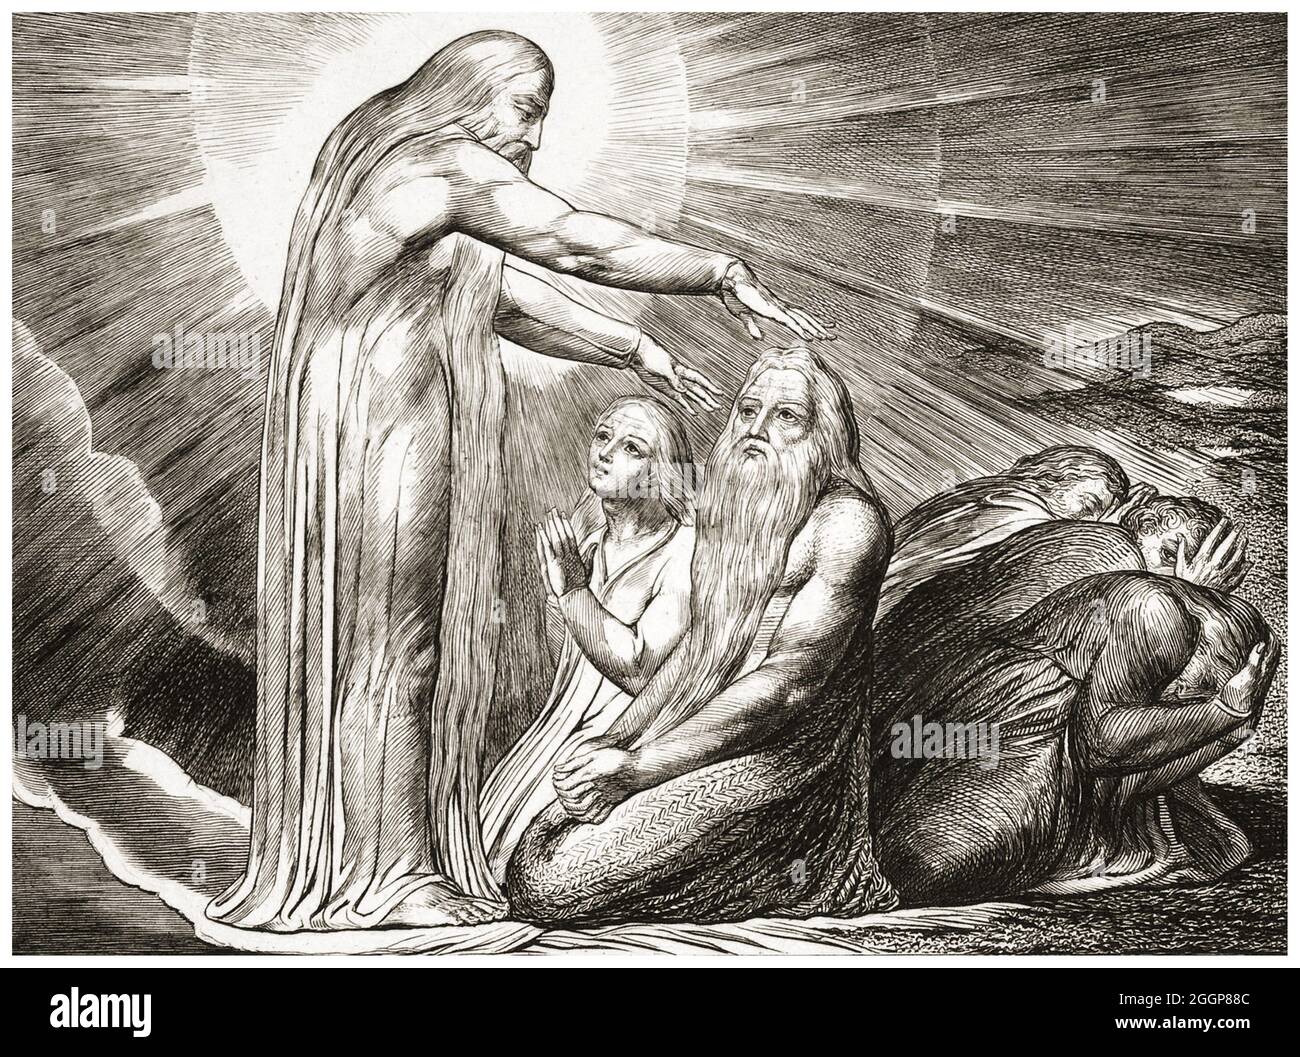 'La visione di Dio' da 'Illustrations of the Book of Job' di William Blake, una serie di incisioni pubblicata nel 1825. Foto Stock